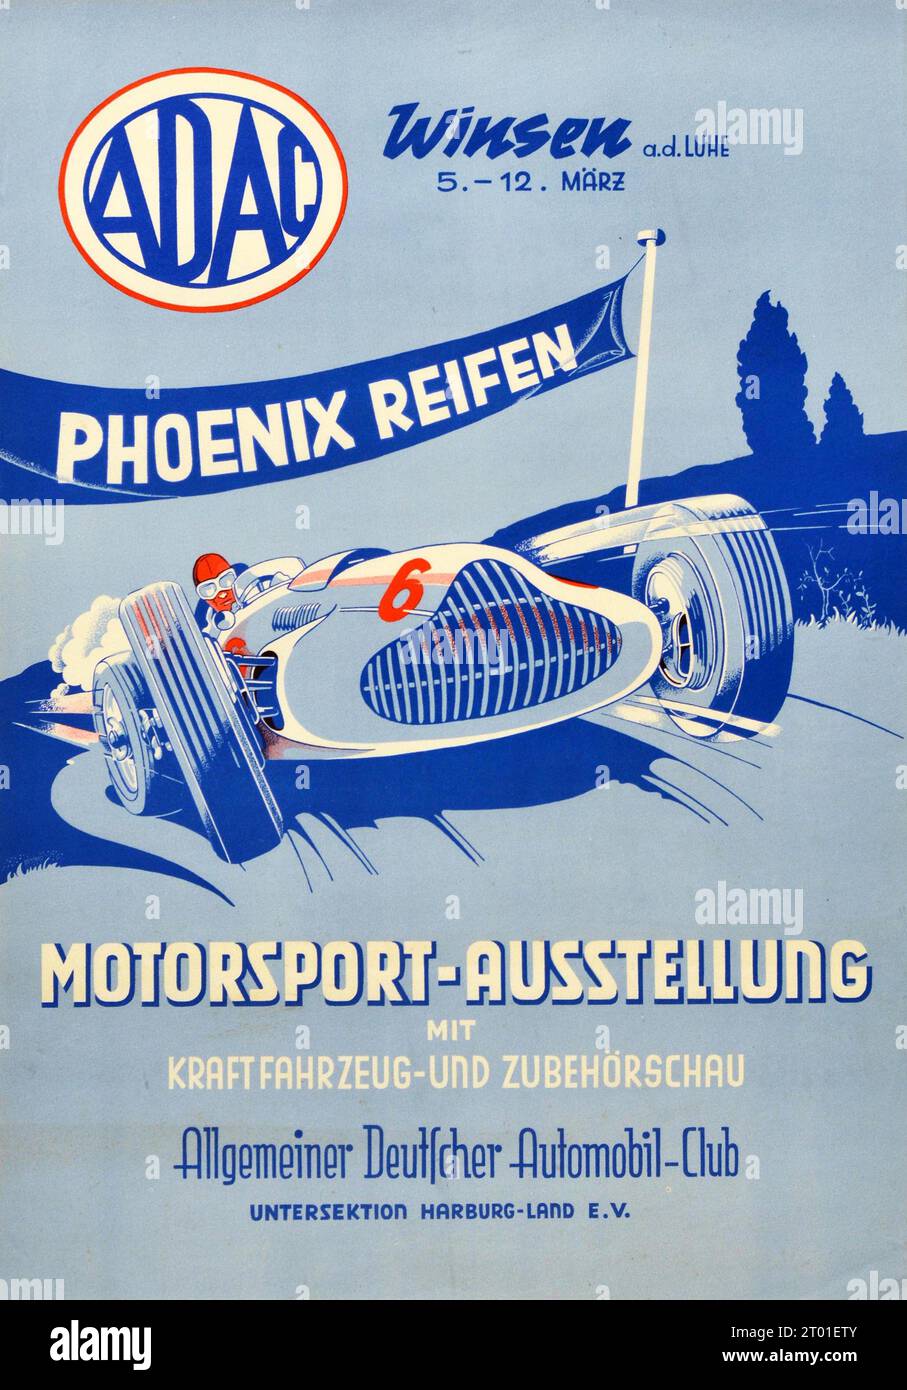 Vintage Motor Poster Motorsport car Exhibition ADAC Phoenix Reifen Tires ad. Illustration de voiture de course - années 1950 Banque D'Images